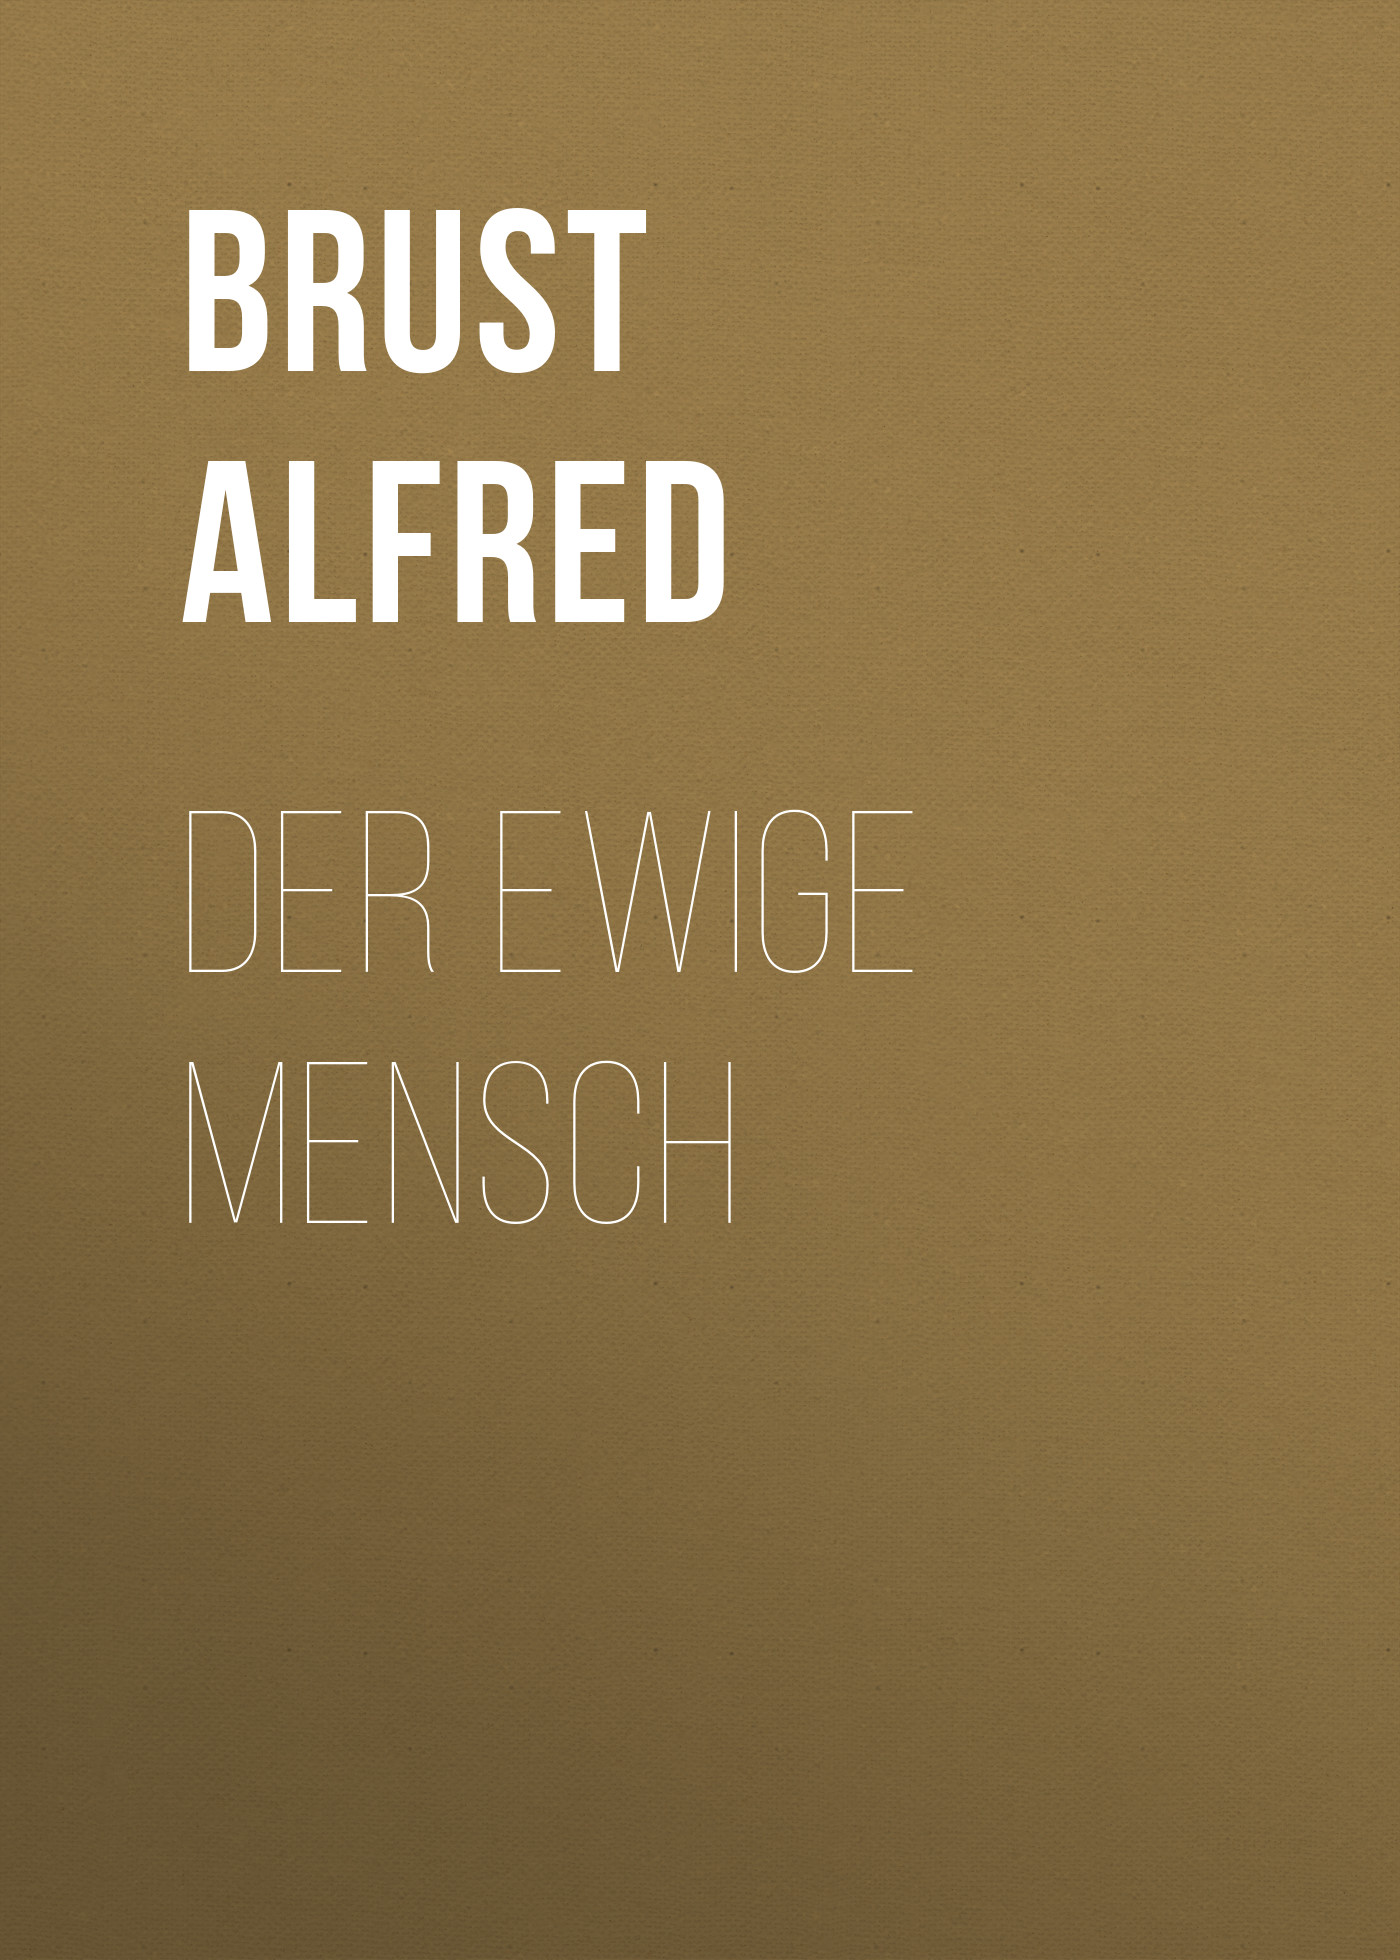 Книга Der ewige Mensch из серии , созданная Alfred Brust, может относится к жанру Зарубежная старинная литература, Зарубежная классика. Стоимость электронной книги Der ewige Mensch с идентификатором 24180396 составляет 0 руб.